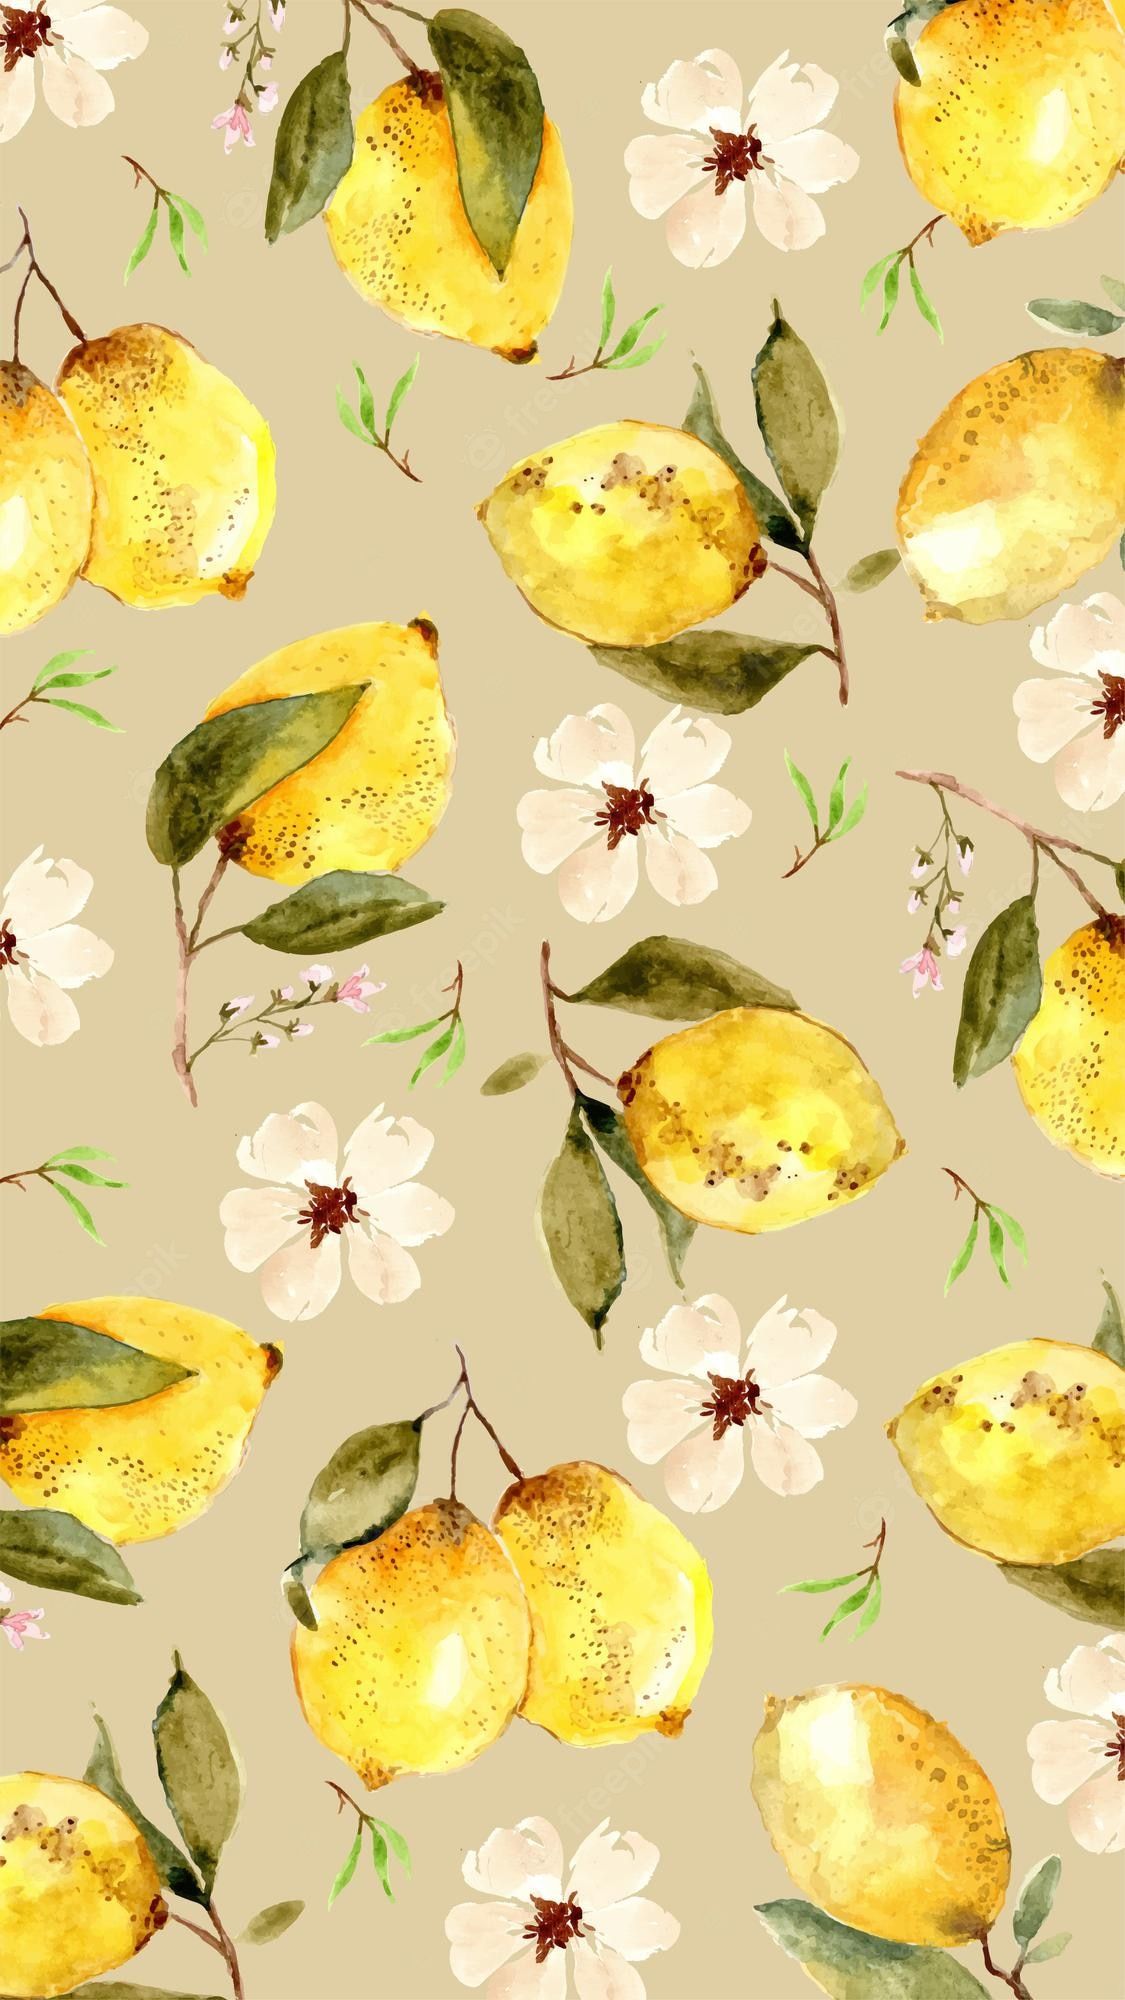 A wallpaper of lemons and flowers - Lemon